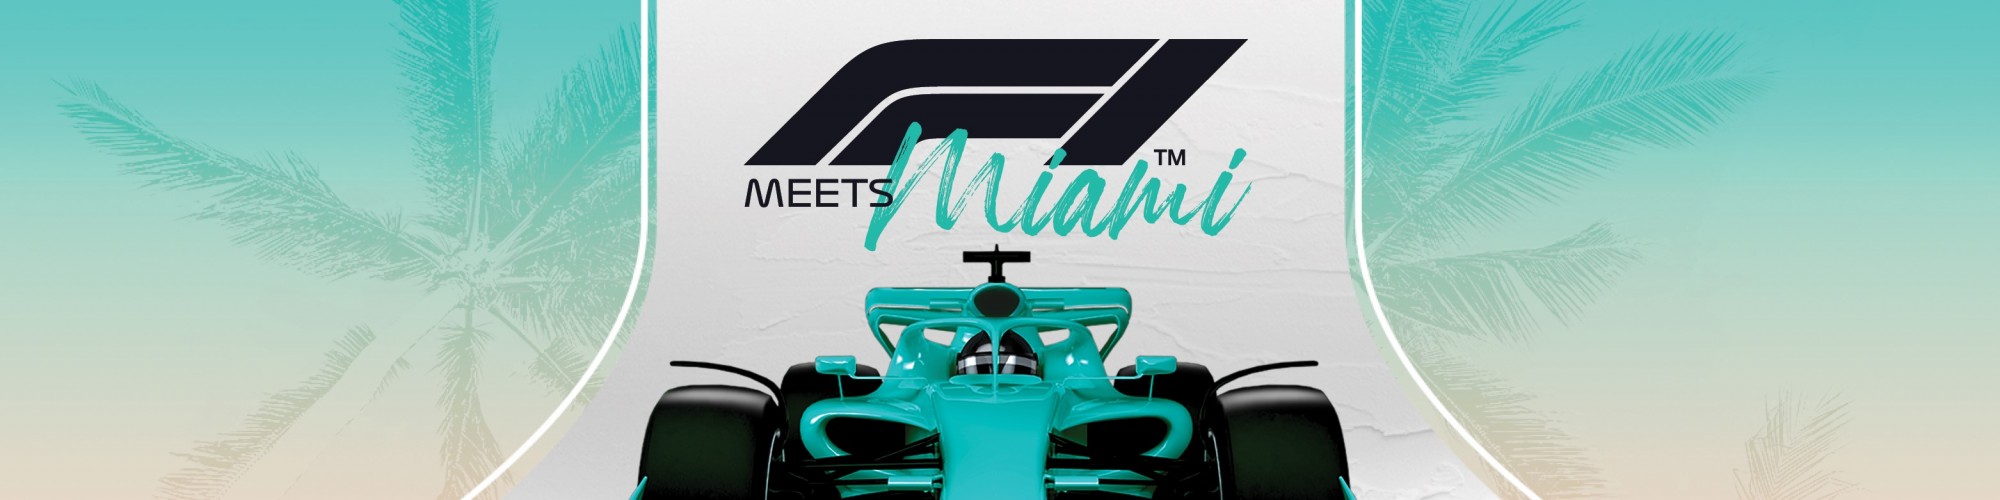 Formula 1 Crypto.com Miami Grand Prix Announces Hard Rock® as First  Founding Partner - Formula 1 Crypto.com Miami Grand Prix